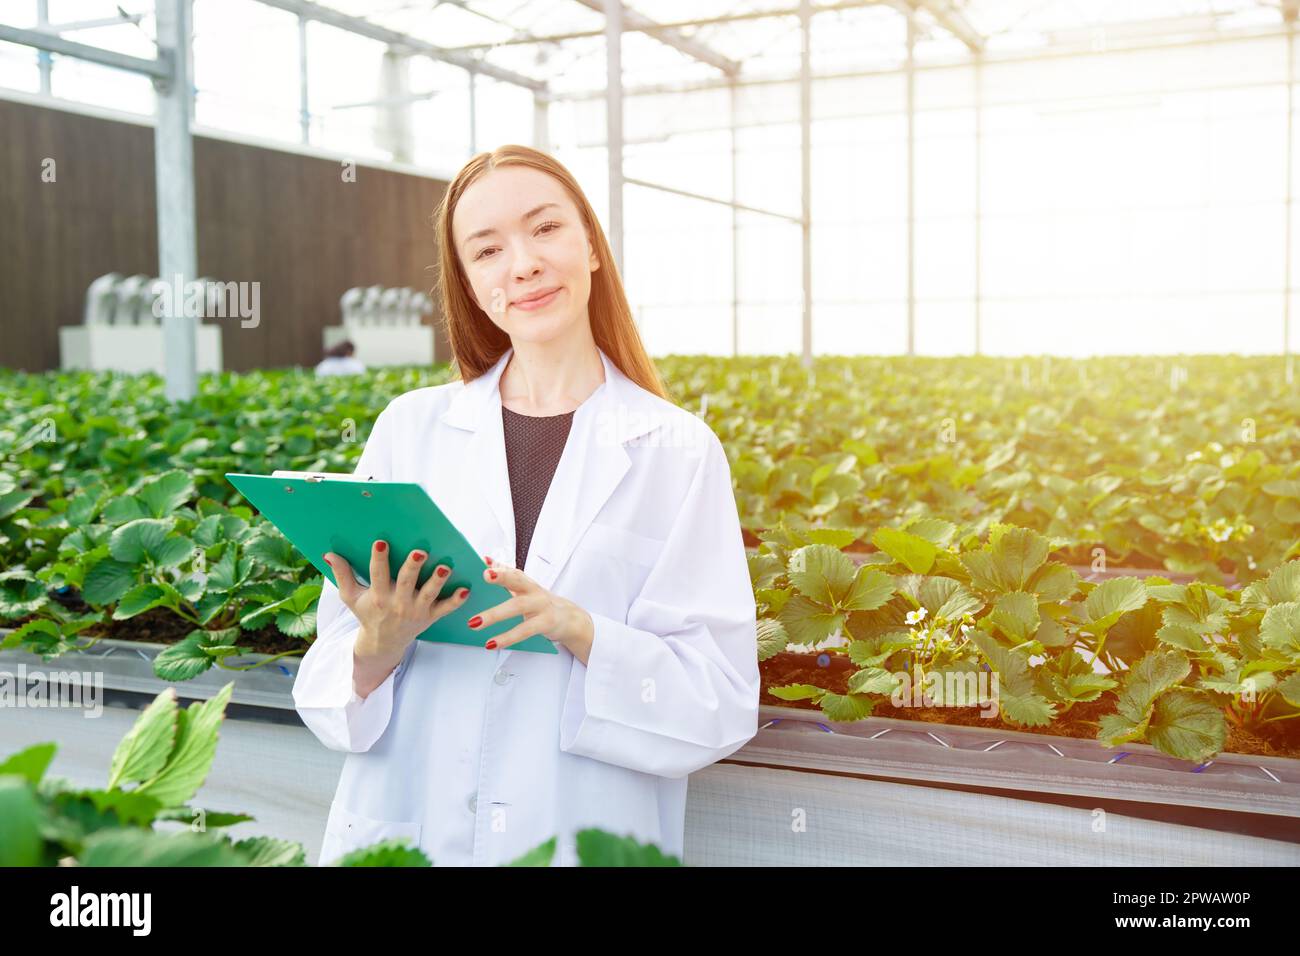 Les scientifiques qui travaillent collectent des données de suivi des plantes cultivent des données pour l'enseignement scientifique de la recherche agricole Banque D'Images